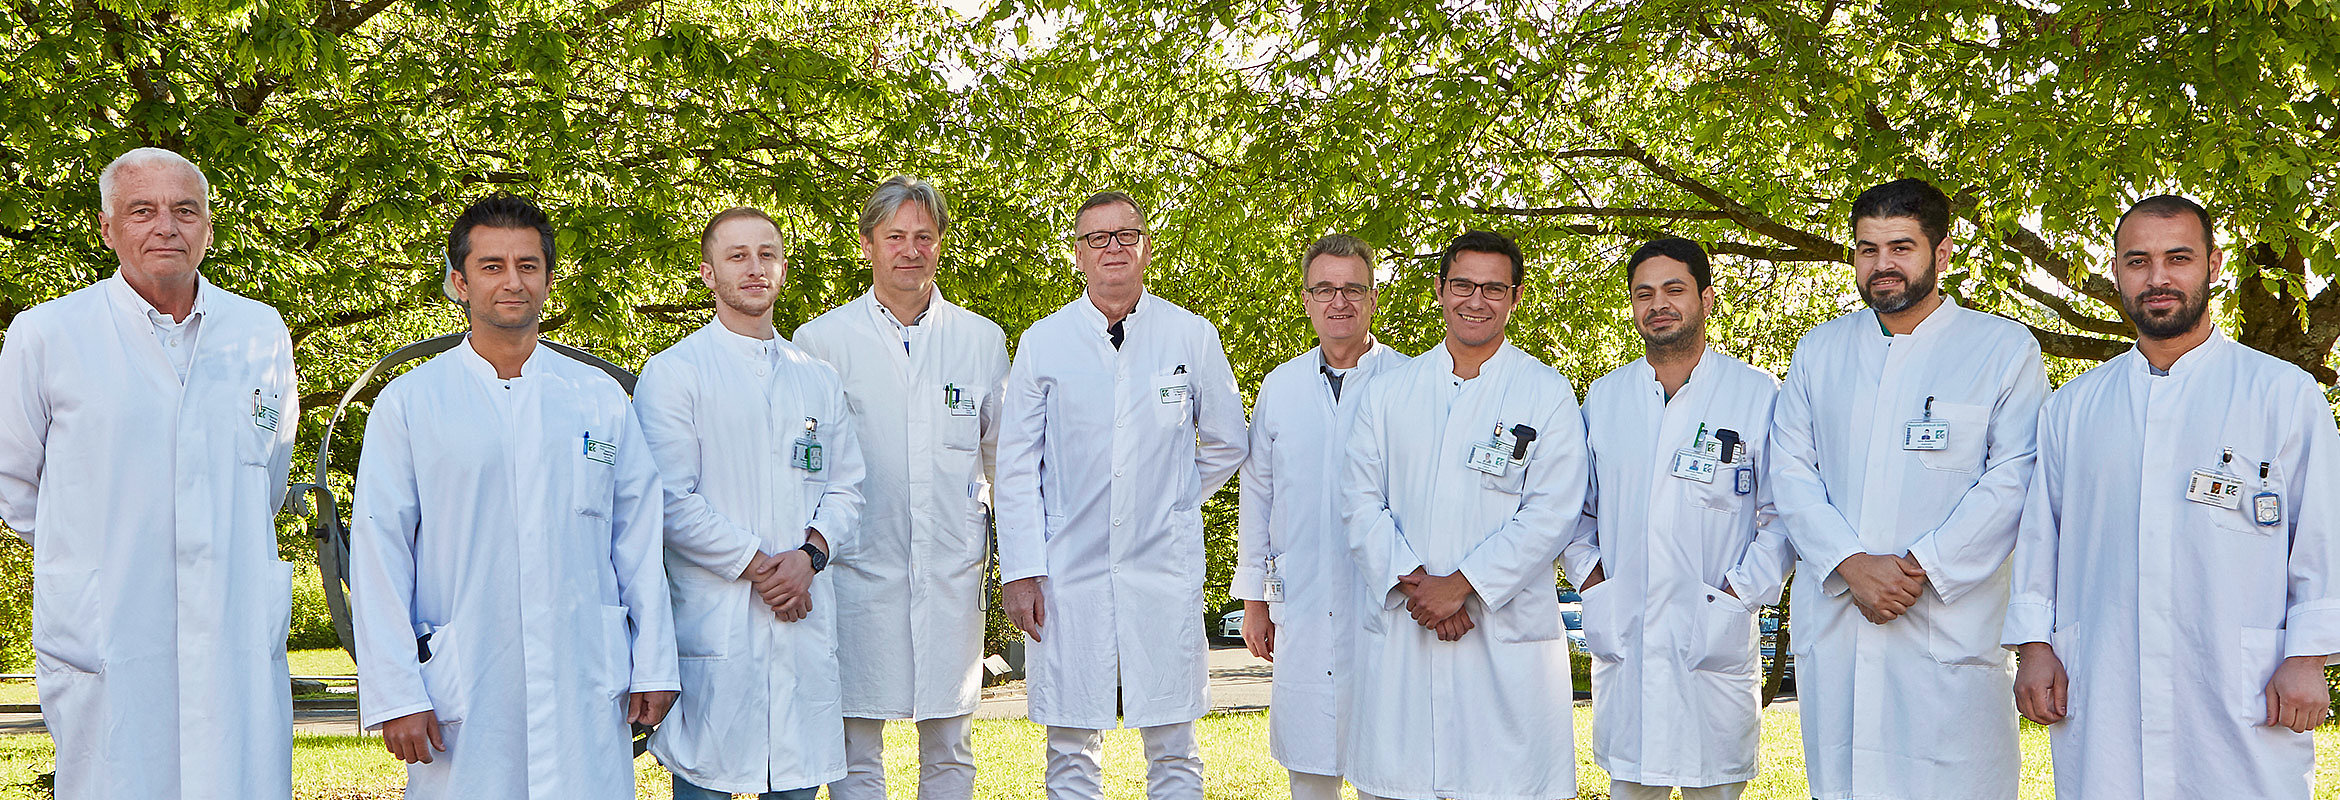 Das Ärzte-Team der Klinik für Orthopädie in Kusel